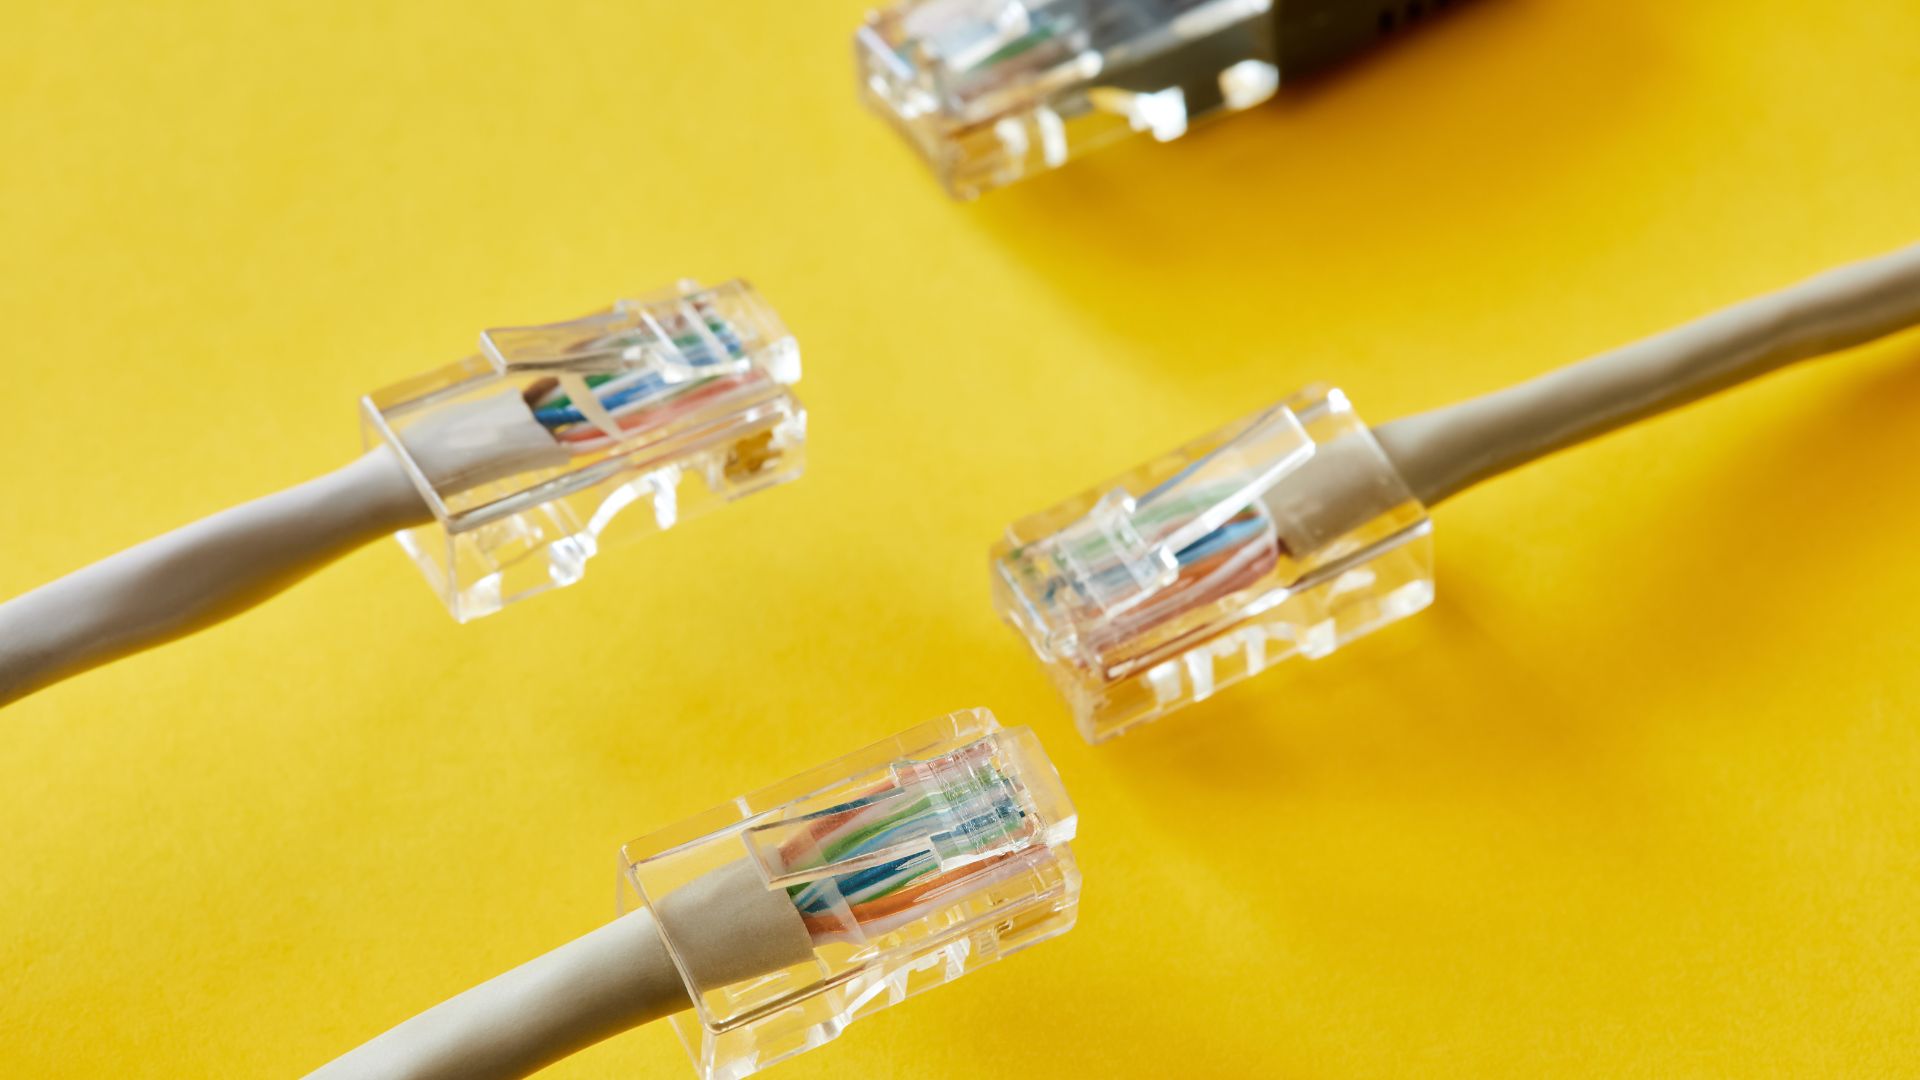 RJ45 Ethernet cables